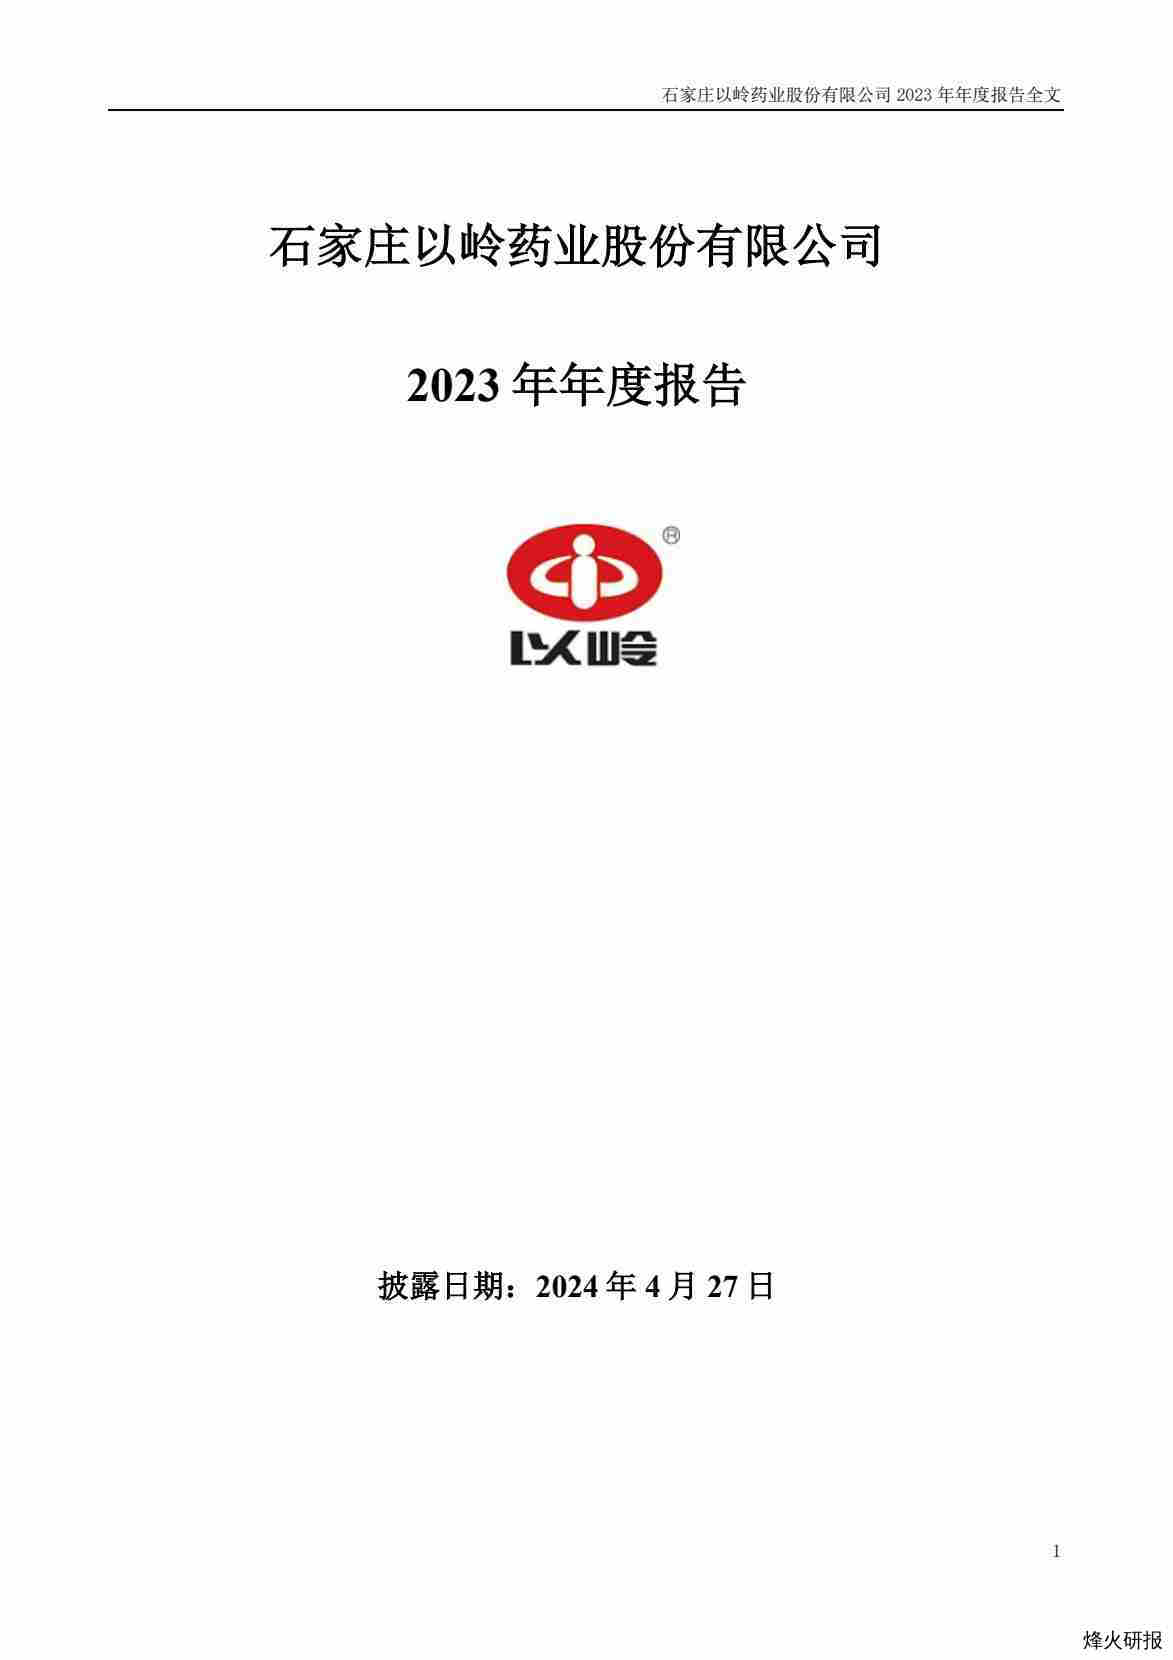 【财报】以岭药业：2023年年度报告.pdf-第一页